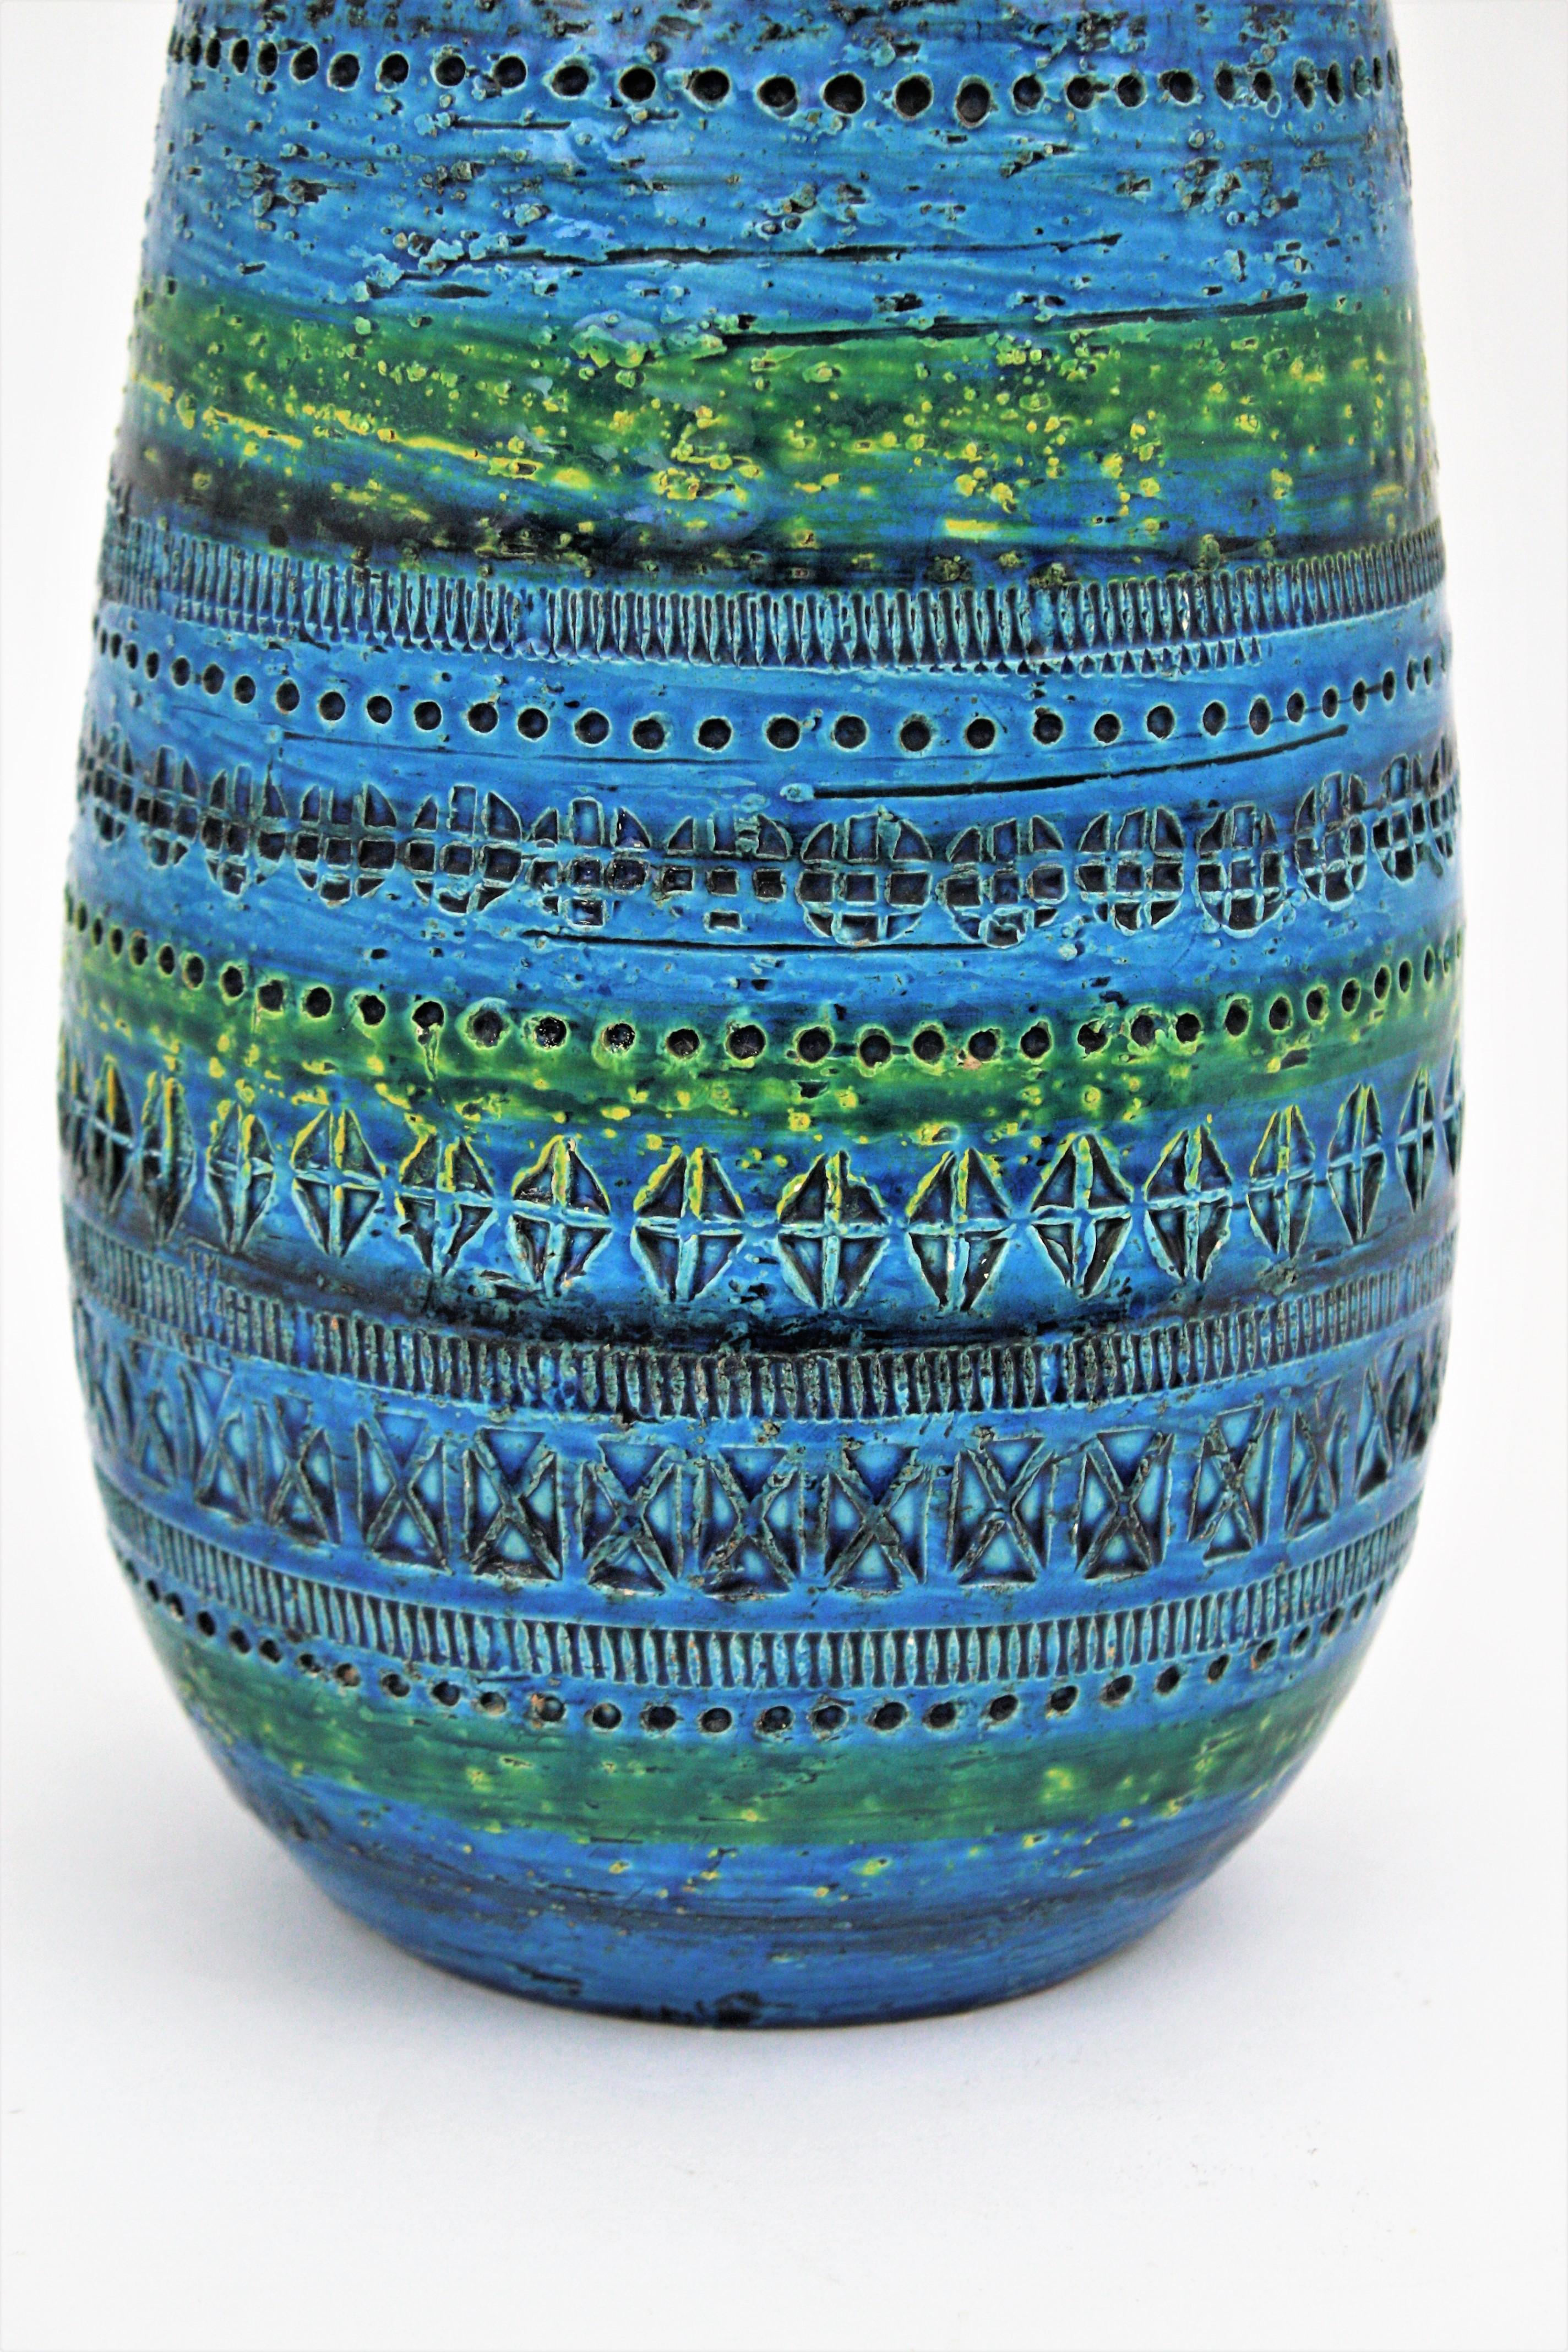 Aldo Londi Bitossi Rimini Blue Glazed Ceramic Ovoid Large Vase 4